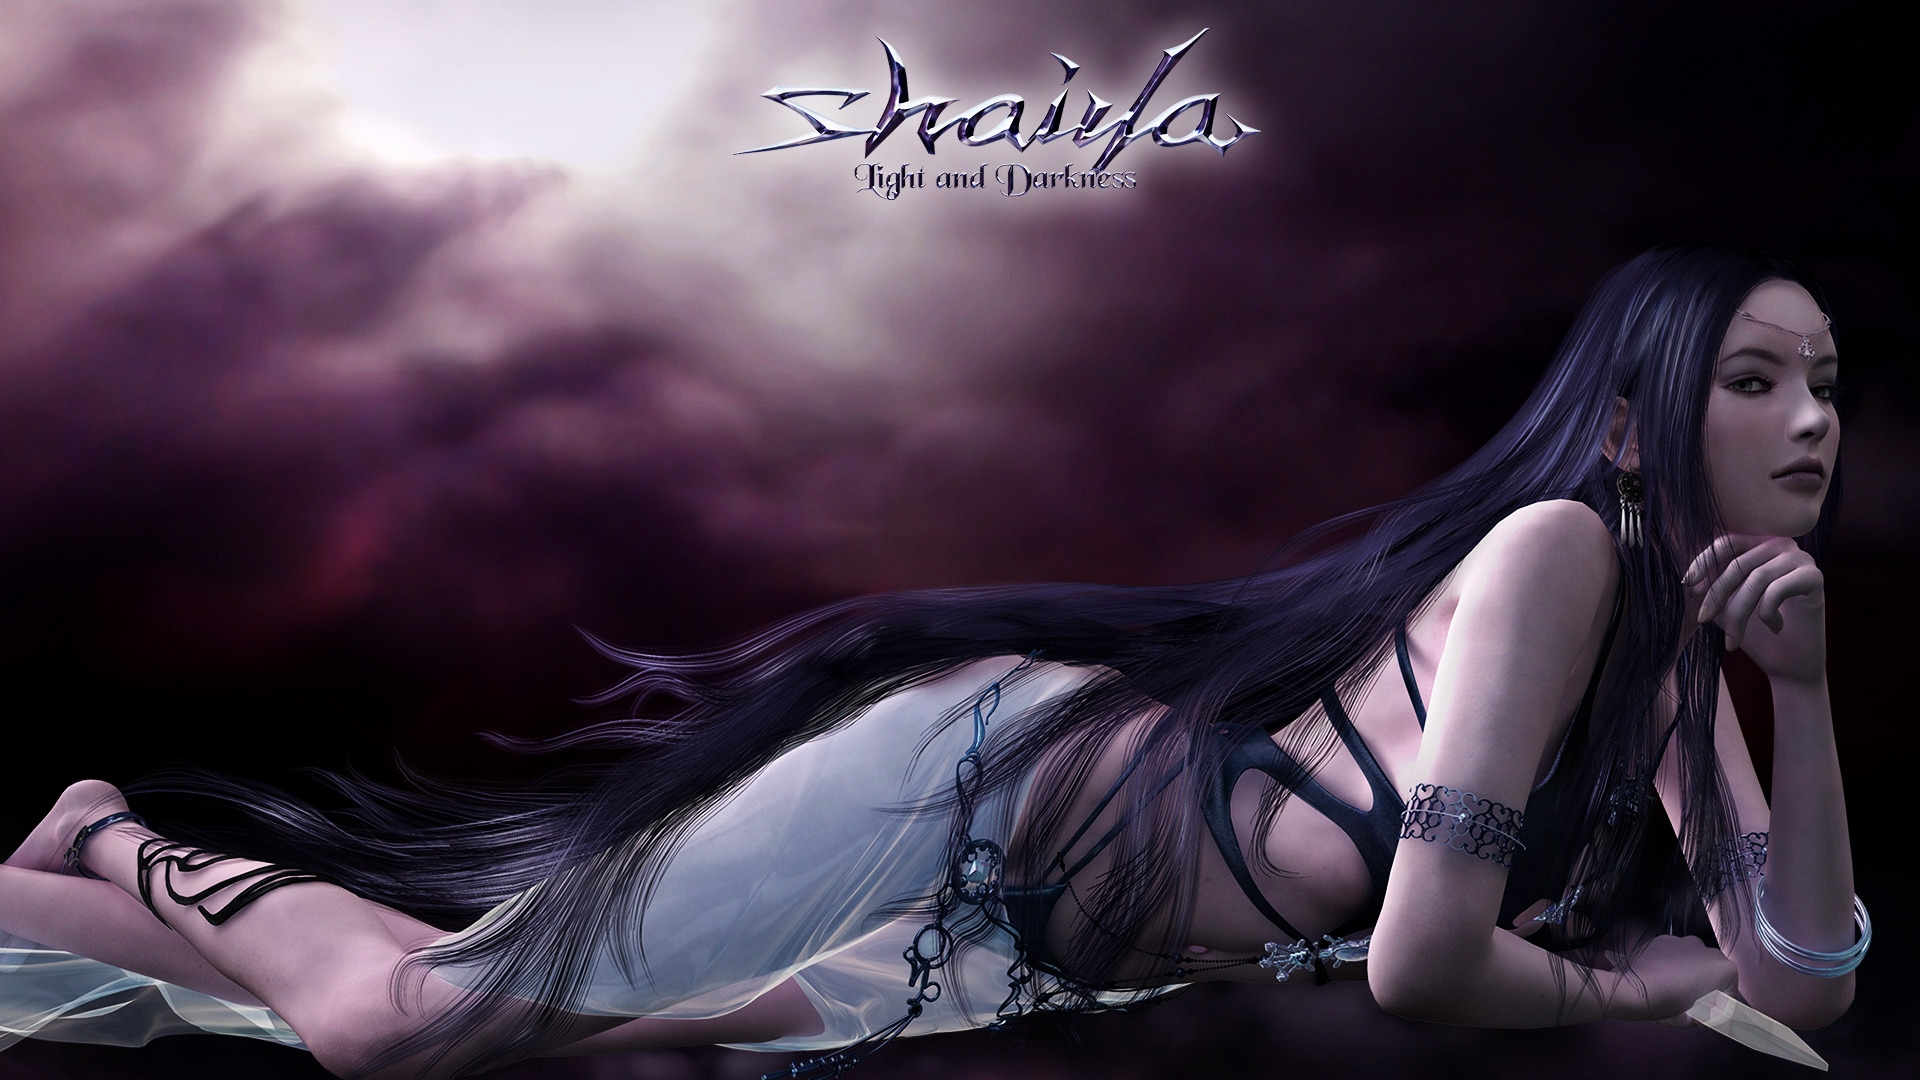 Shaiya Long Purple Hair for 1920 x 1080 HDTV 1080p resolution